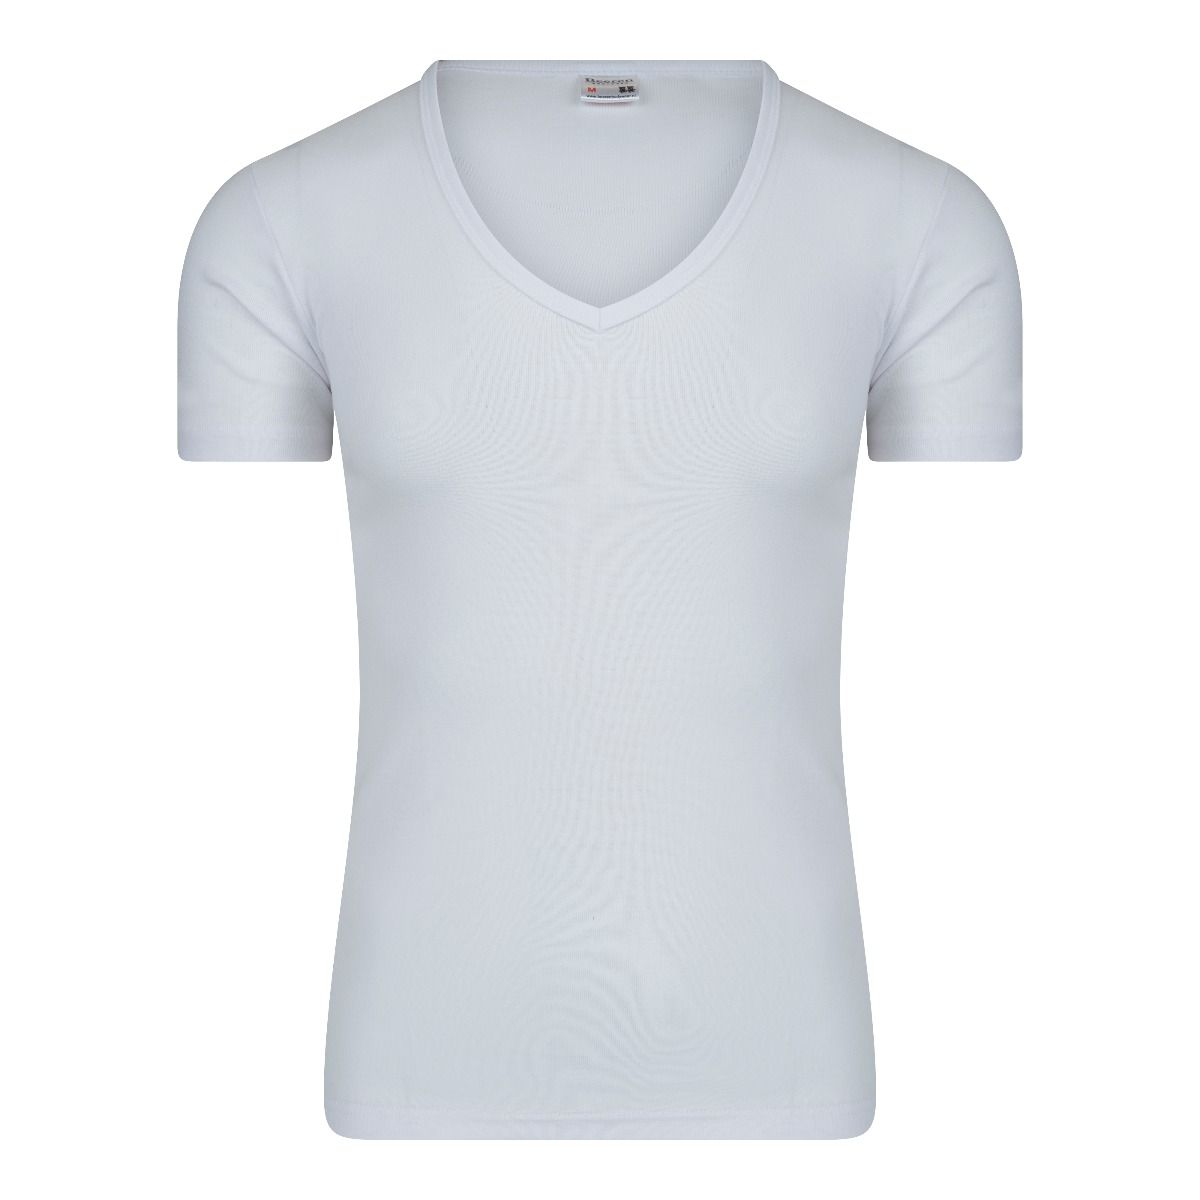 Krimpen Uitbreiding zelfstandig naamwoord Beeren T-Shirt wit diepe v hals 5 stuks - Ideaal voor onder overhemden